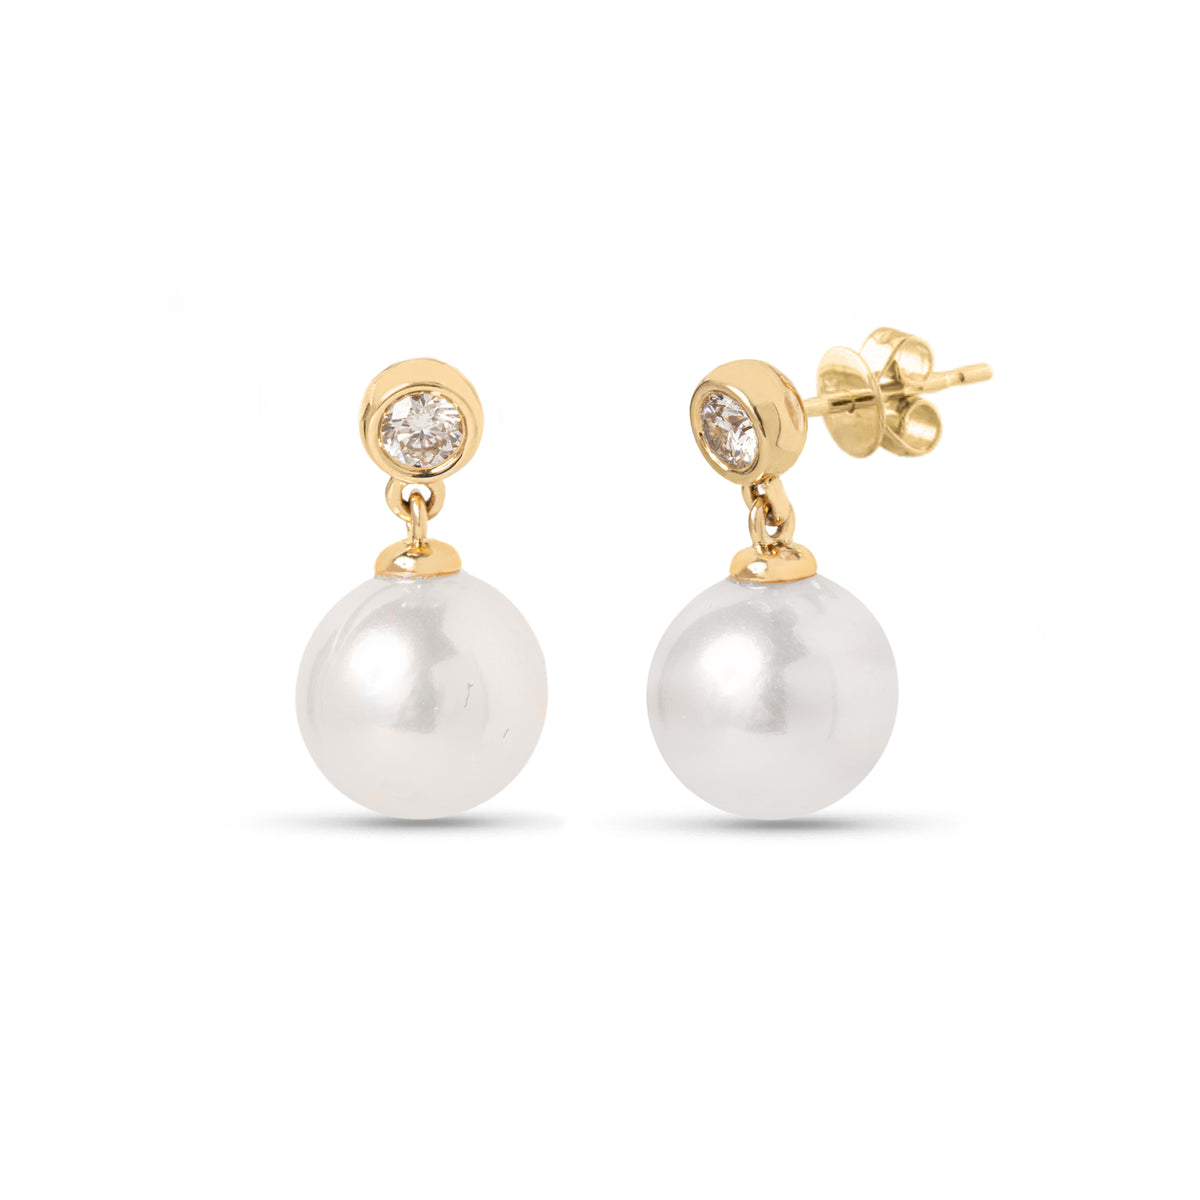 14k yellow gold diamond bezel studs with pearl drop earrings